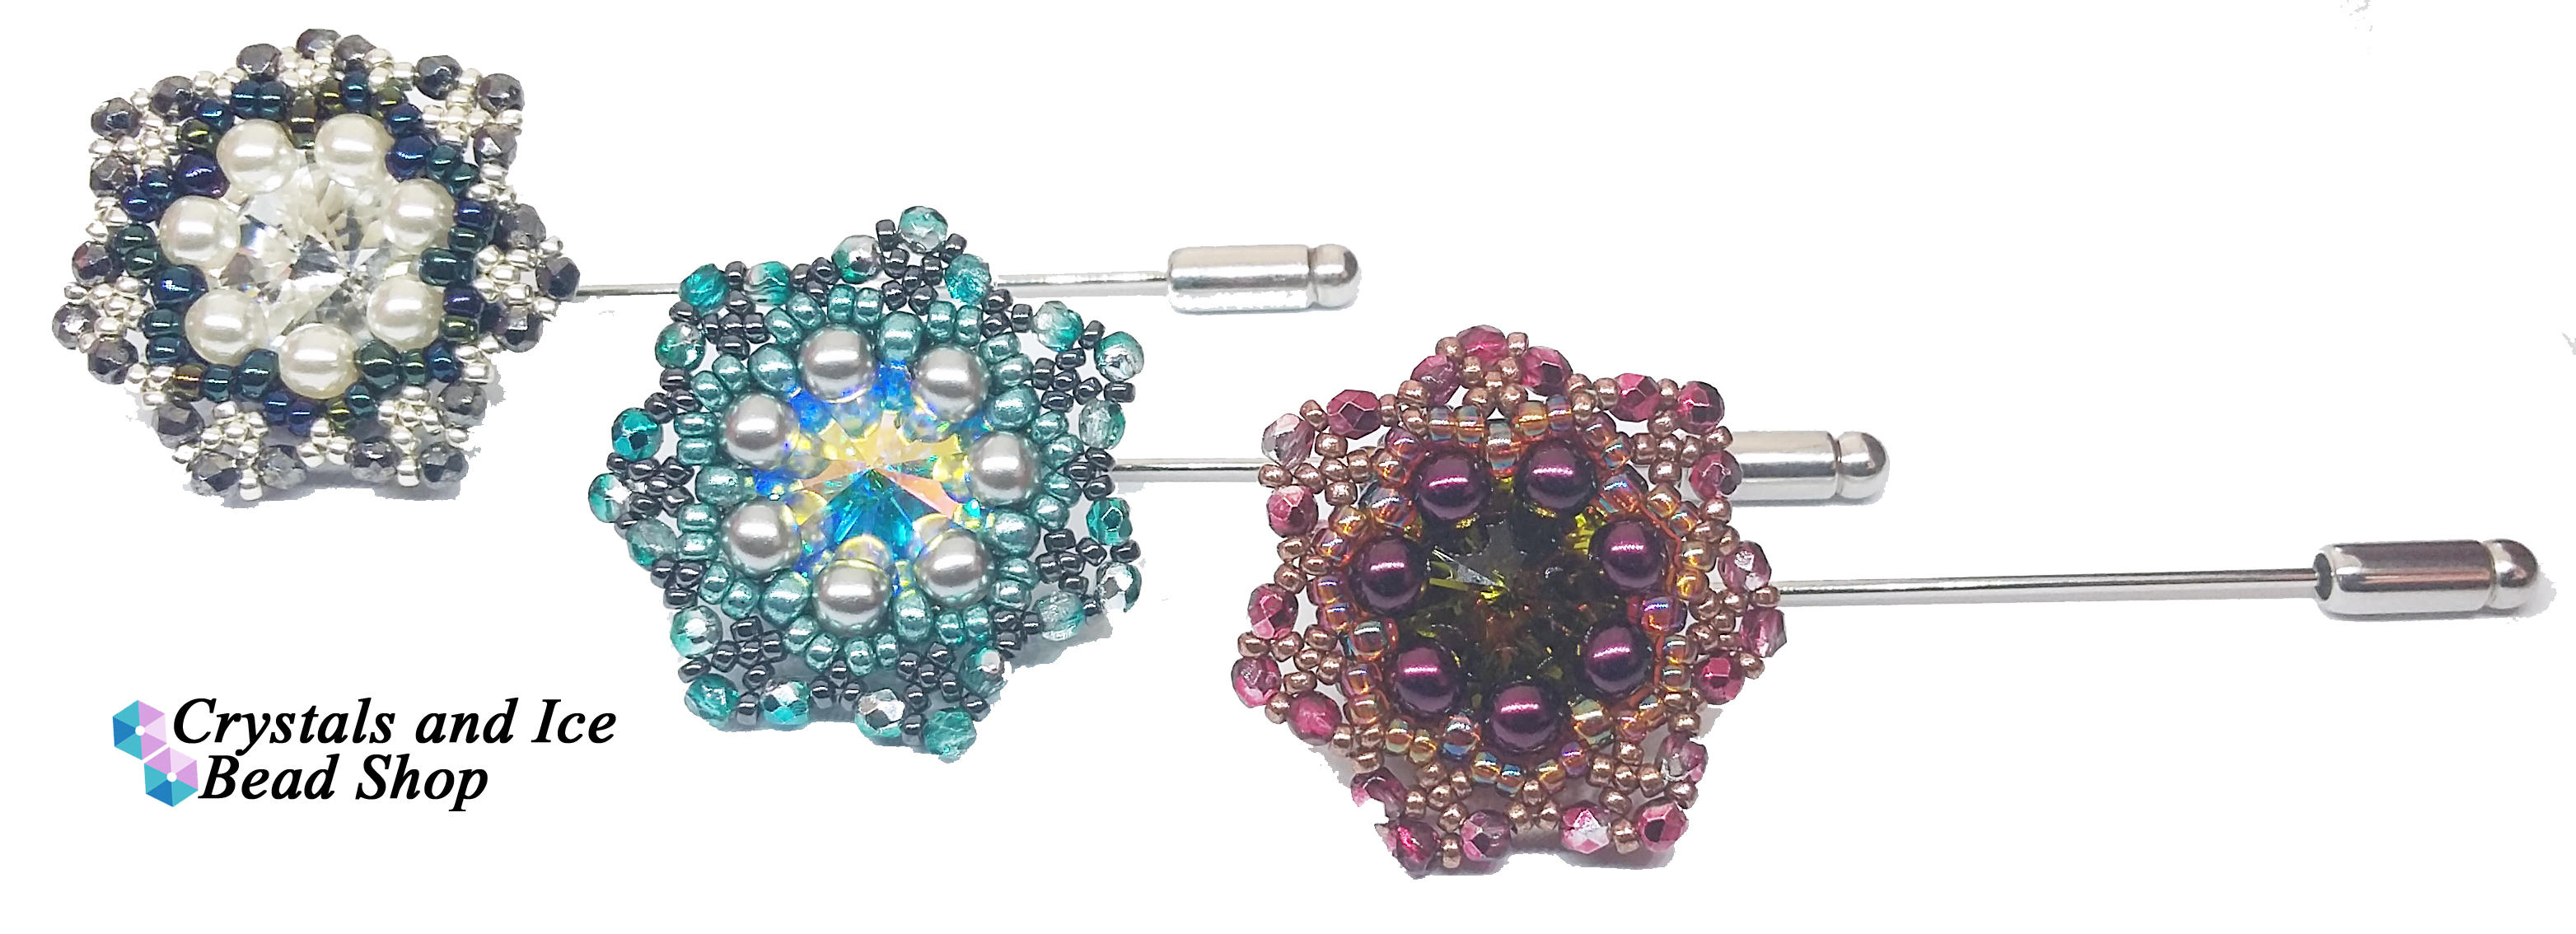 Star Flower Brooch Pin Kit - Estrela